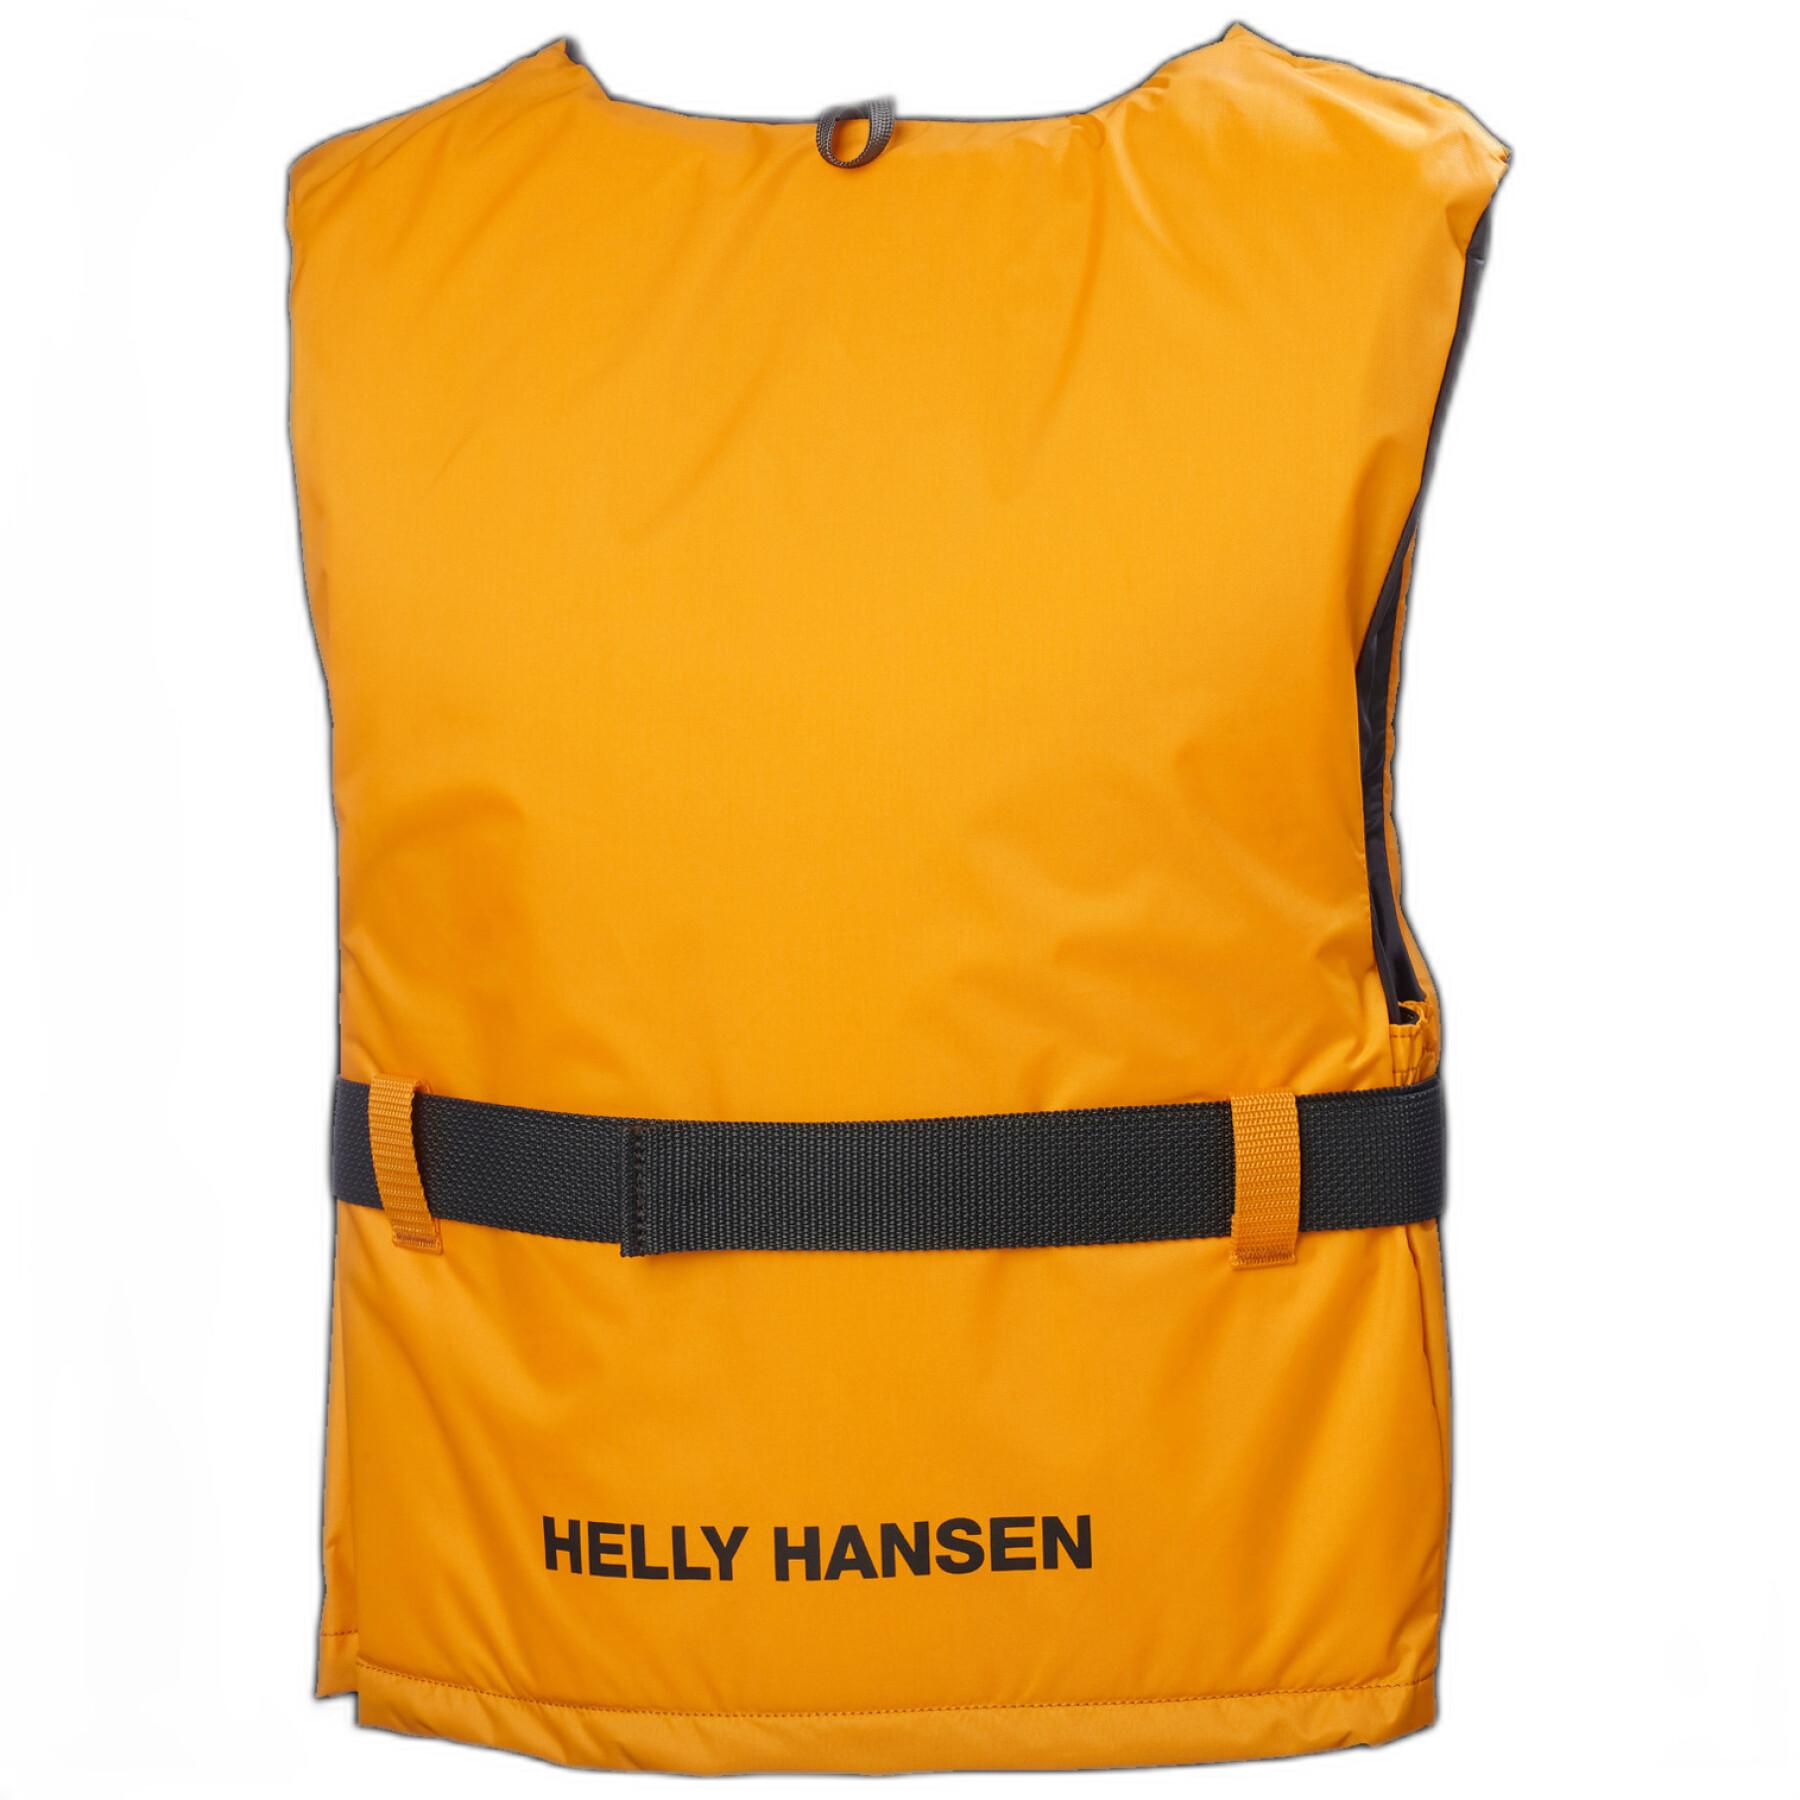 Rettungsweste Helly Hansen sport II